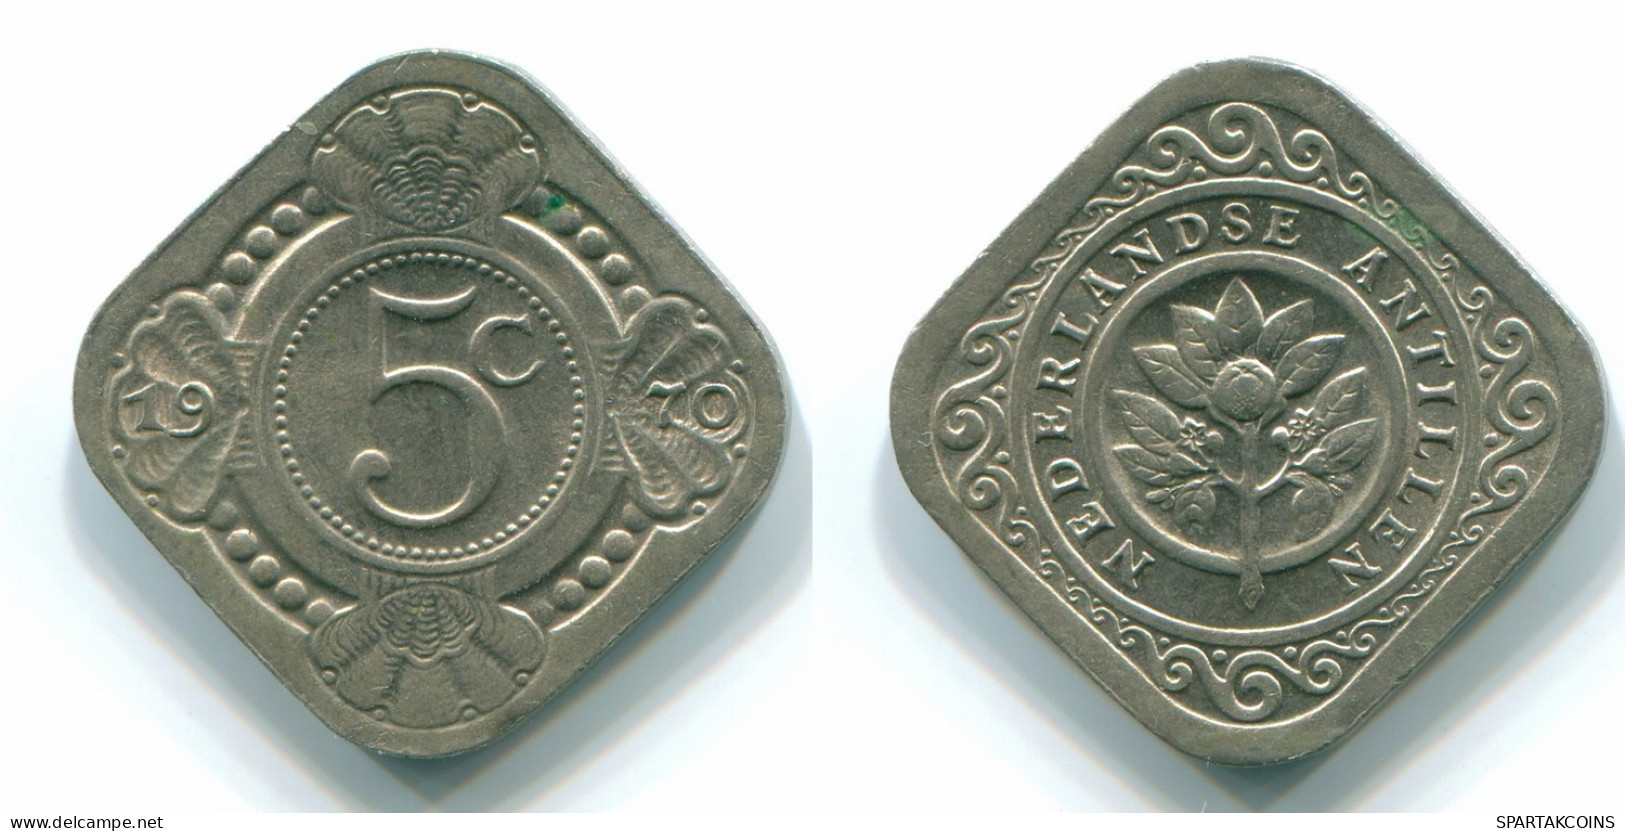 5 CENTS 1970 NIEDERLÄNDISCHE ANTILLEN Nickel Koloniale Münze #S12514.D.A - Antilles Néerlandaises